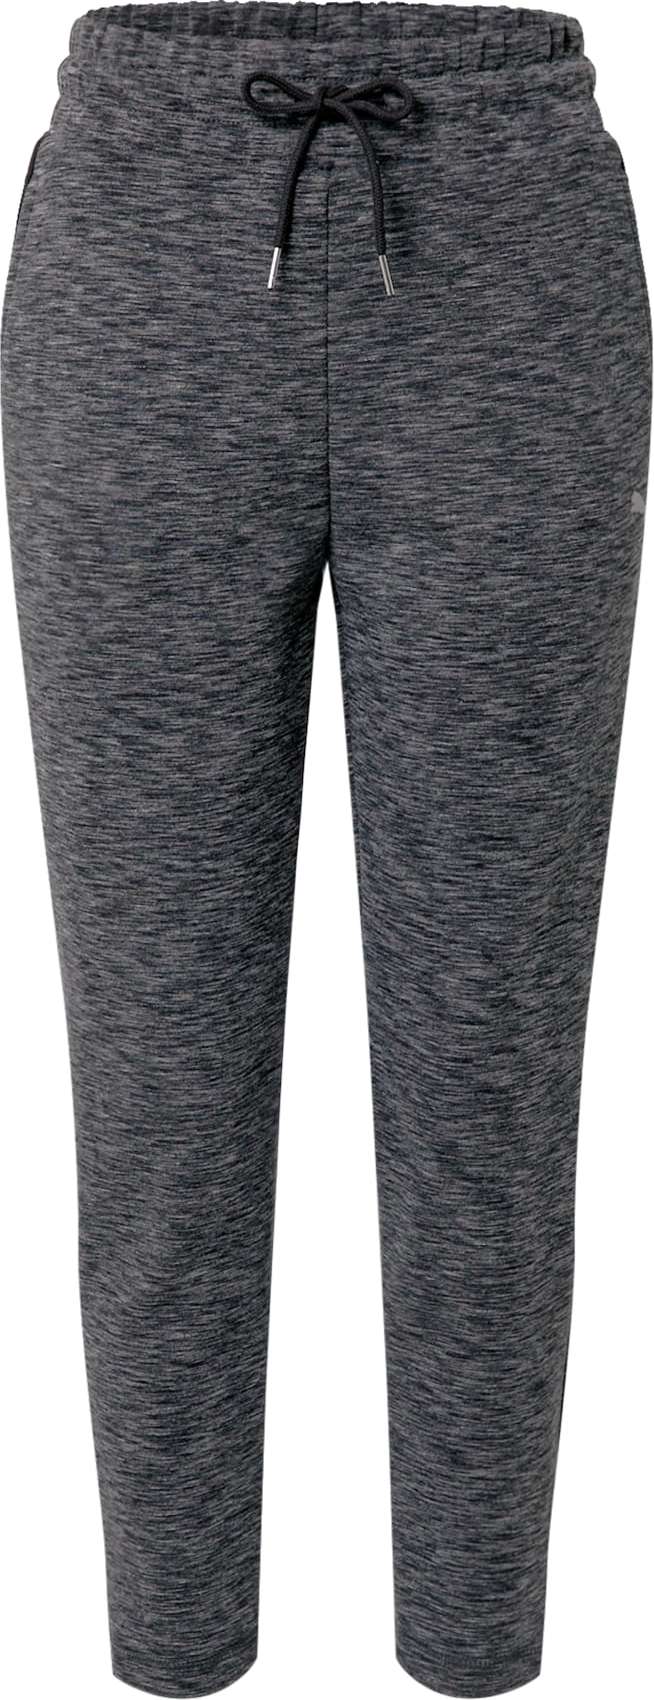 PUMA Sportovní kalhoty 'Evostripe' šedý melír / světle šedá / černá